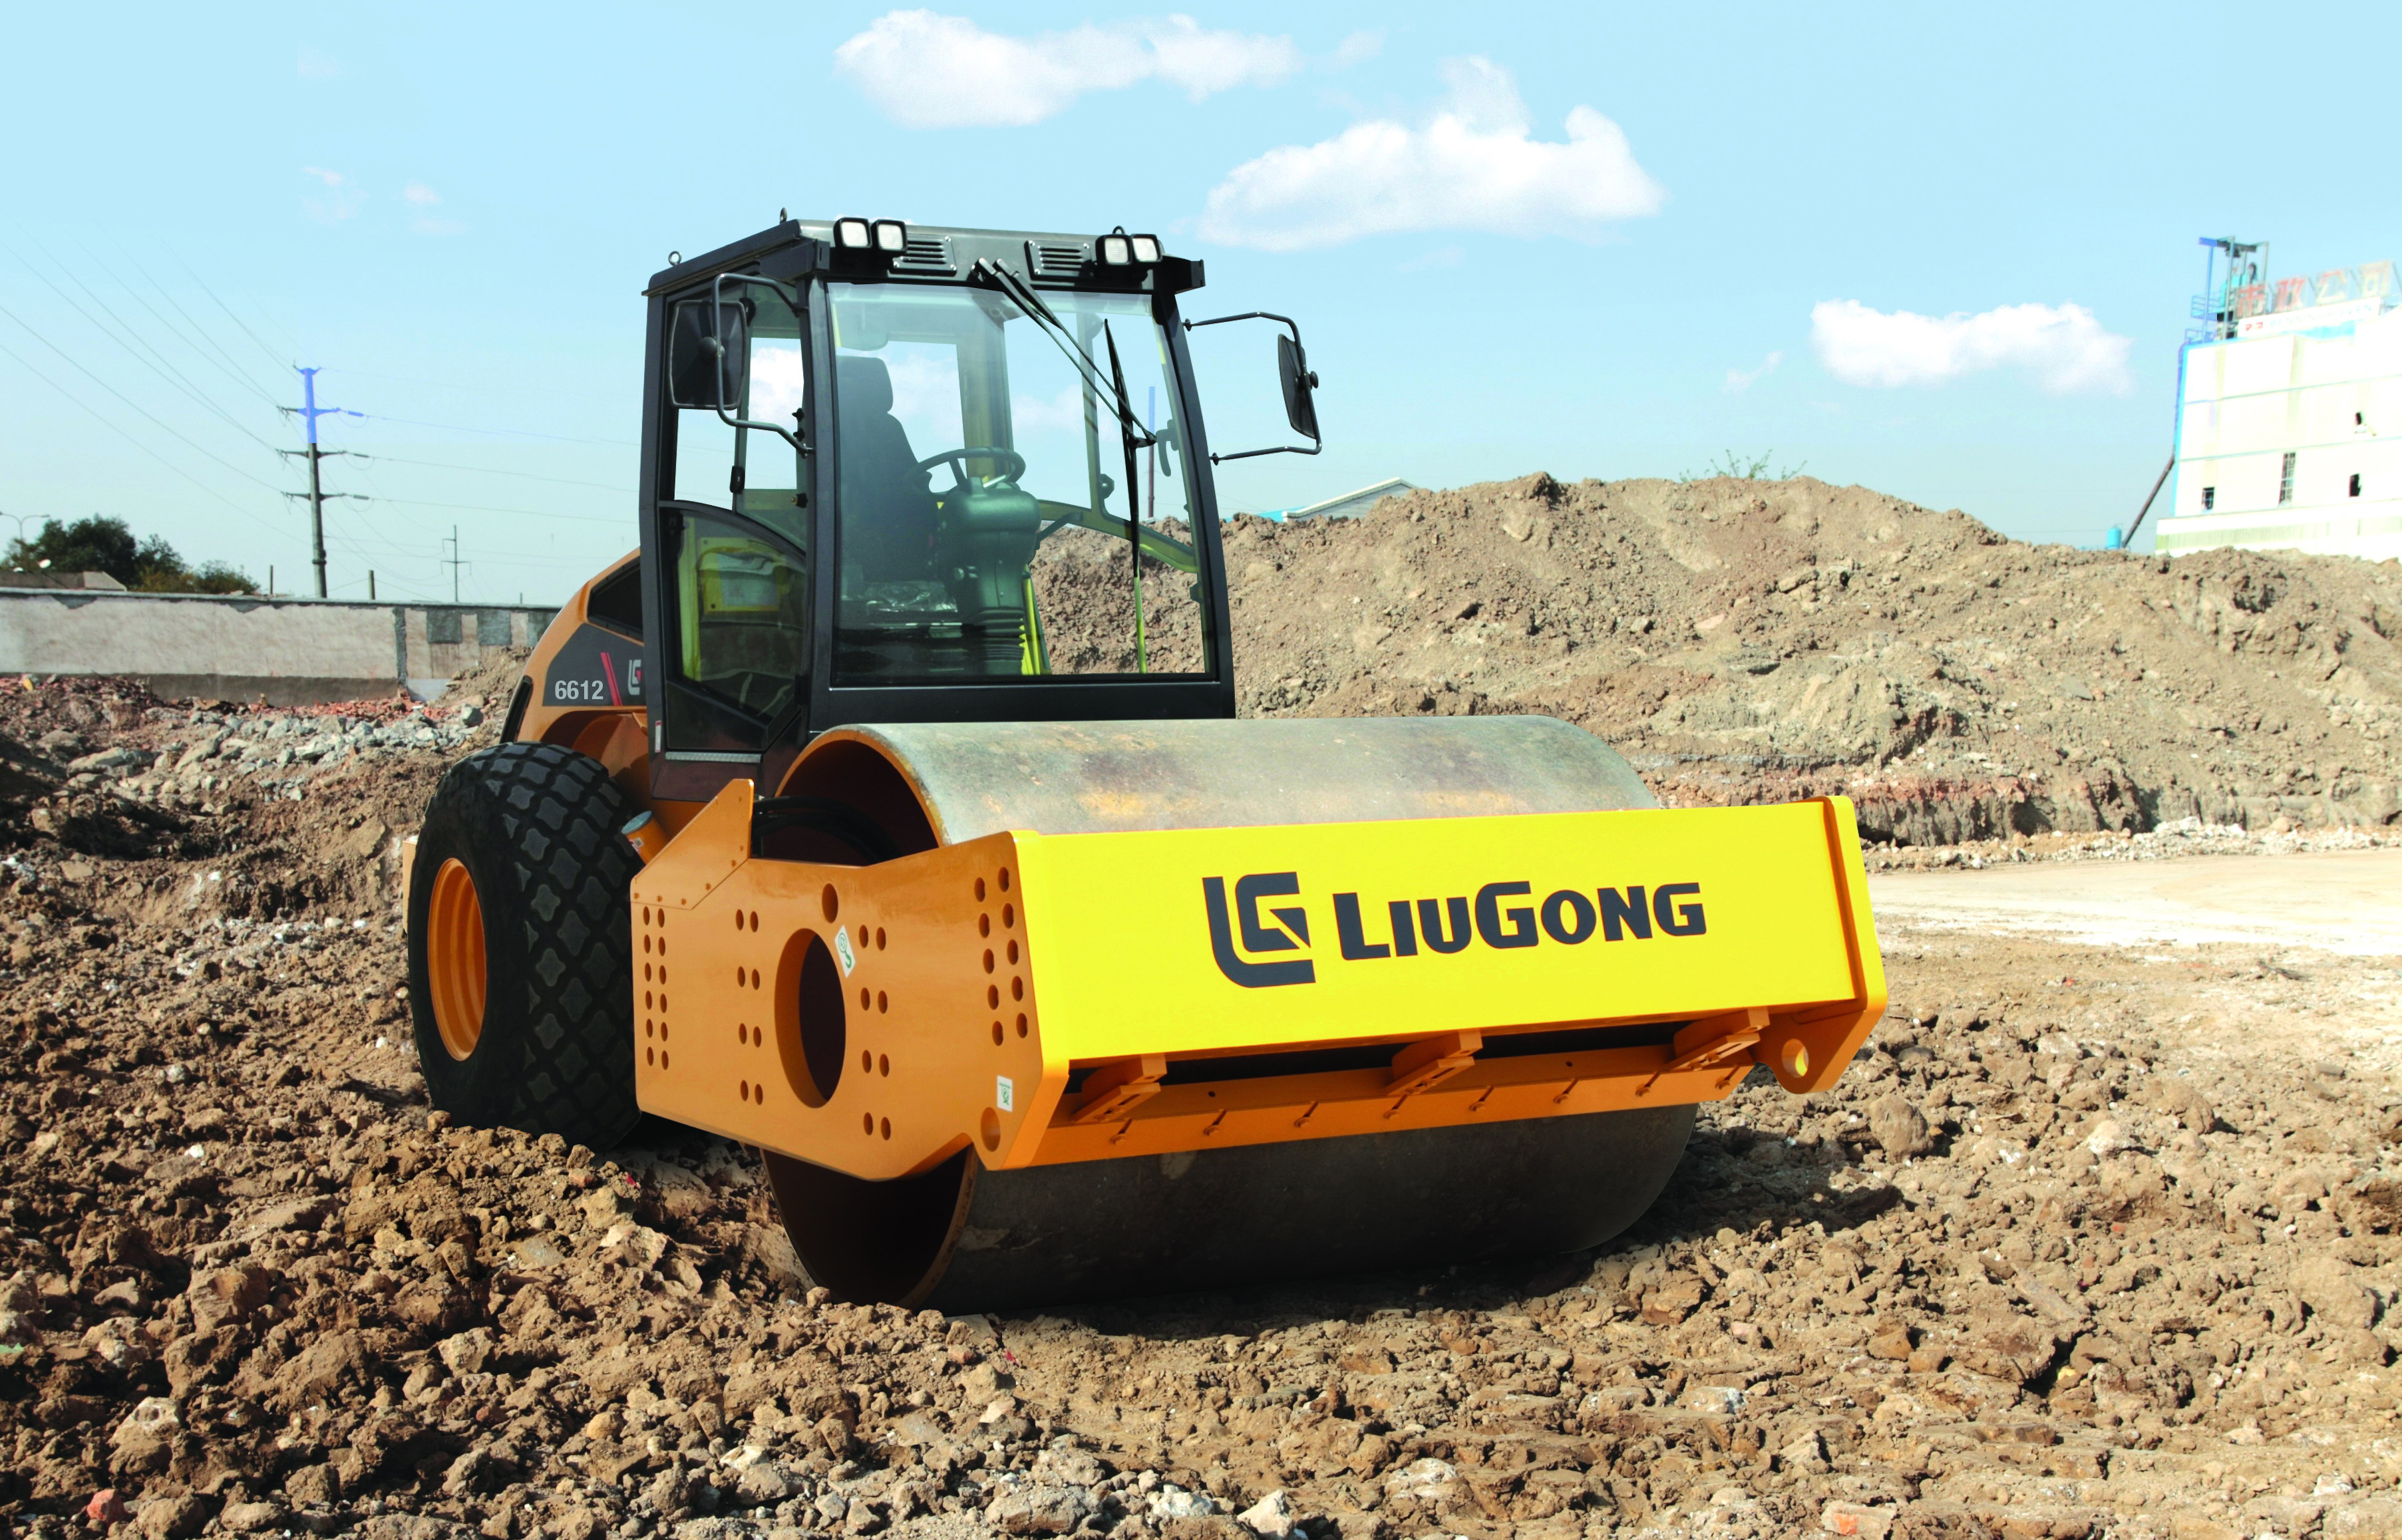 LioGong’s B-series soil compactor